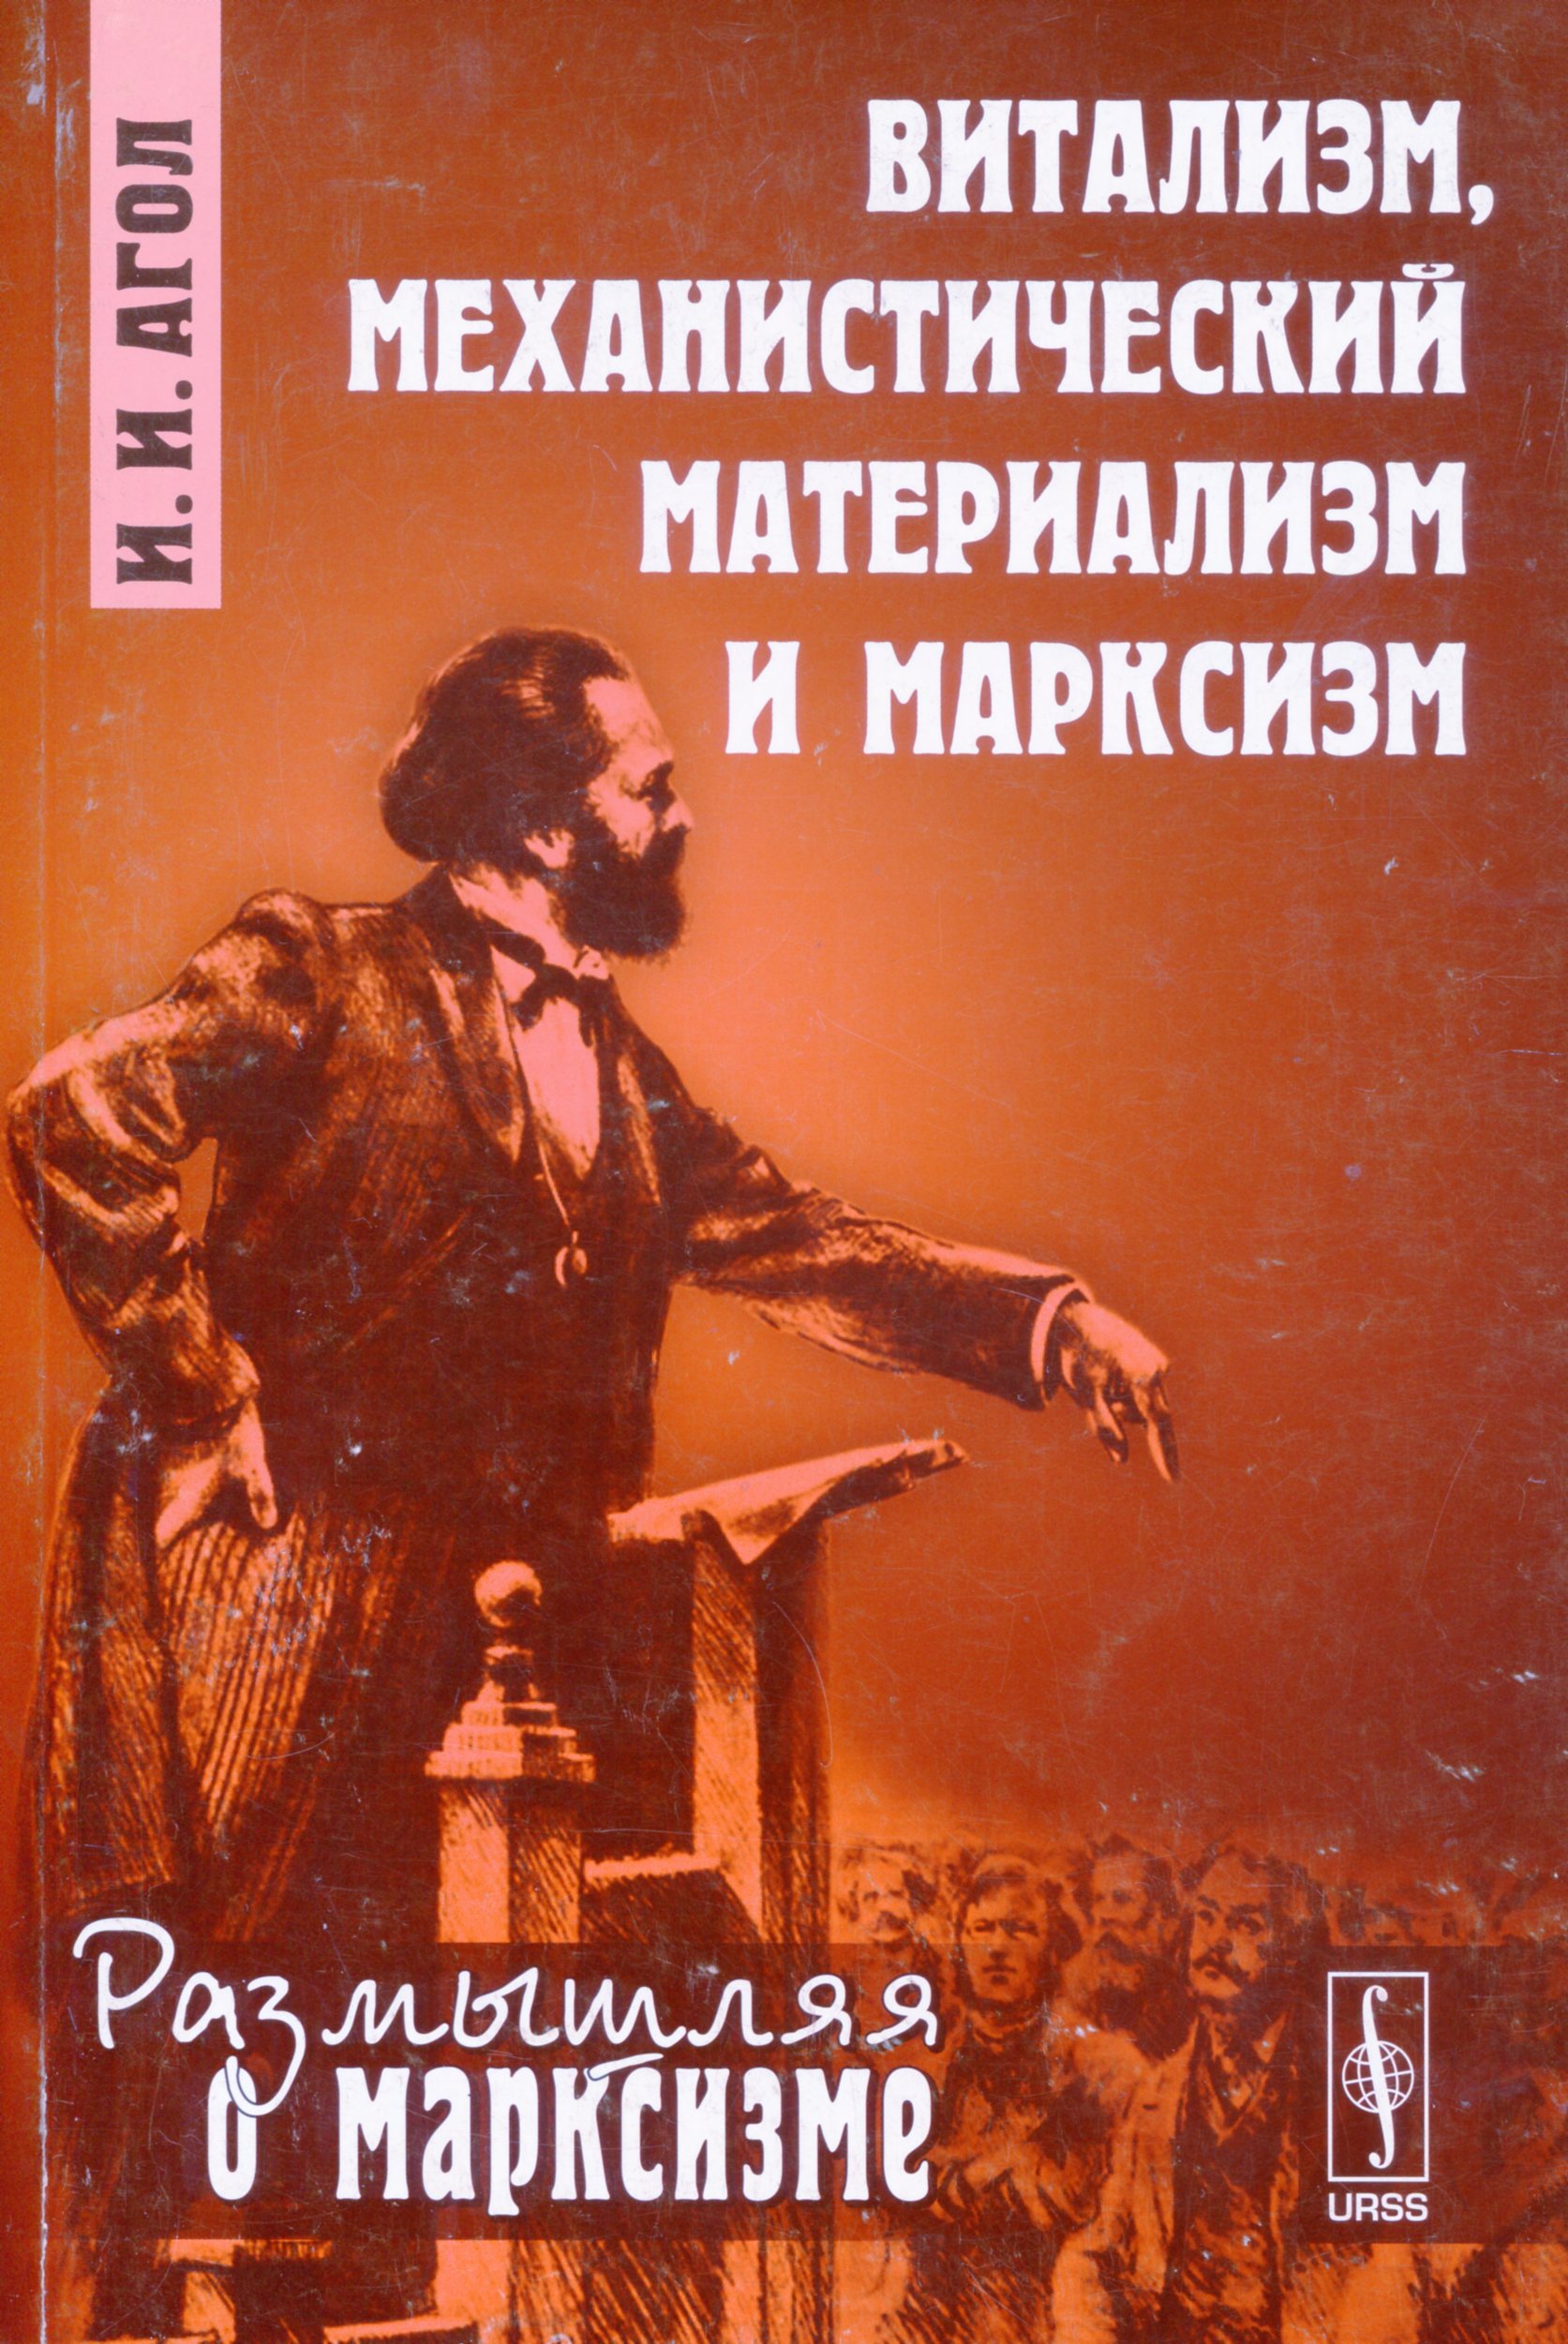 Агол И. И. Витализм, механистический материализм и марксизм. М.: URSS, 2013. 232 с